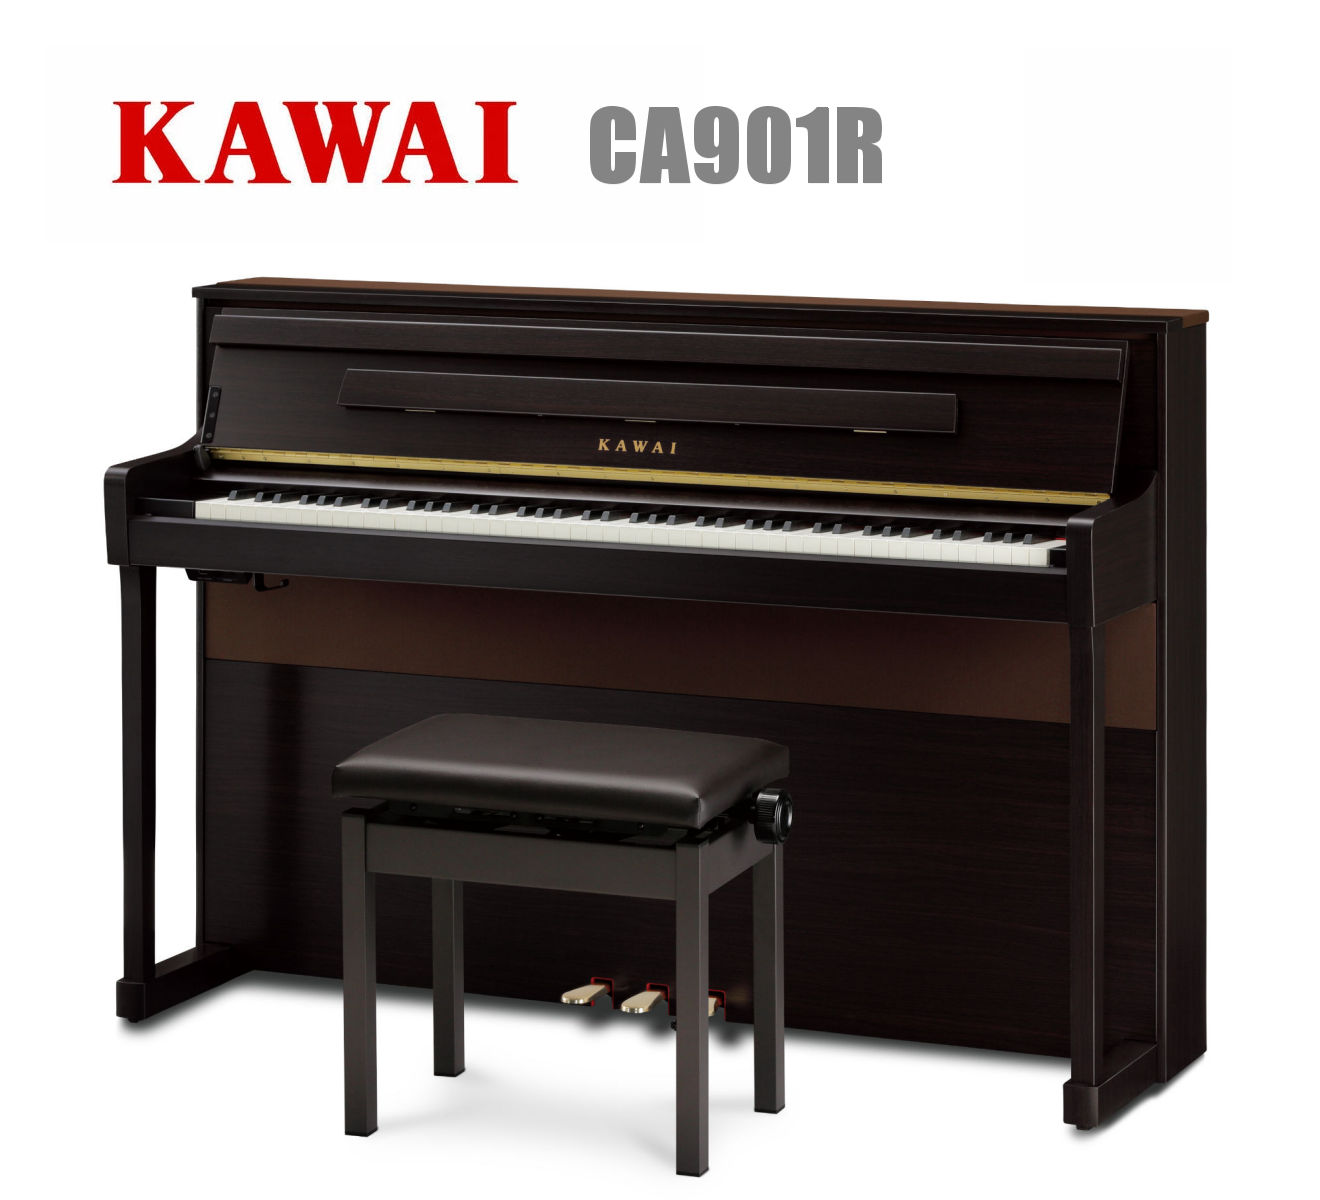 KAWAI CA901R カワイ 電子ピアノ 木製鍵盤 88鍵 プレミアムローズ